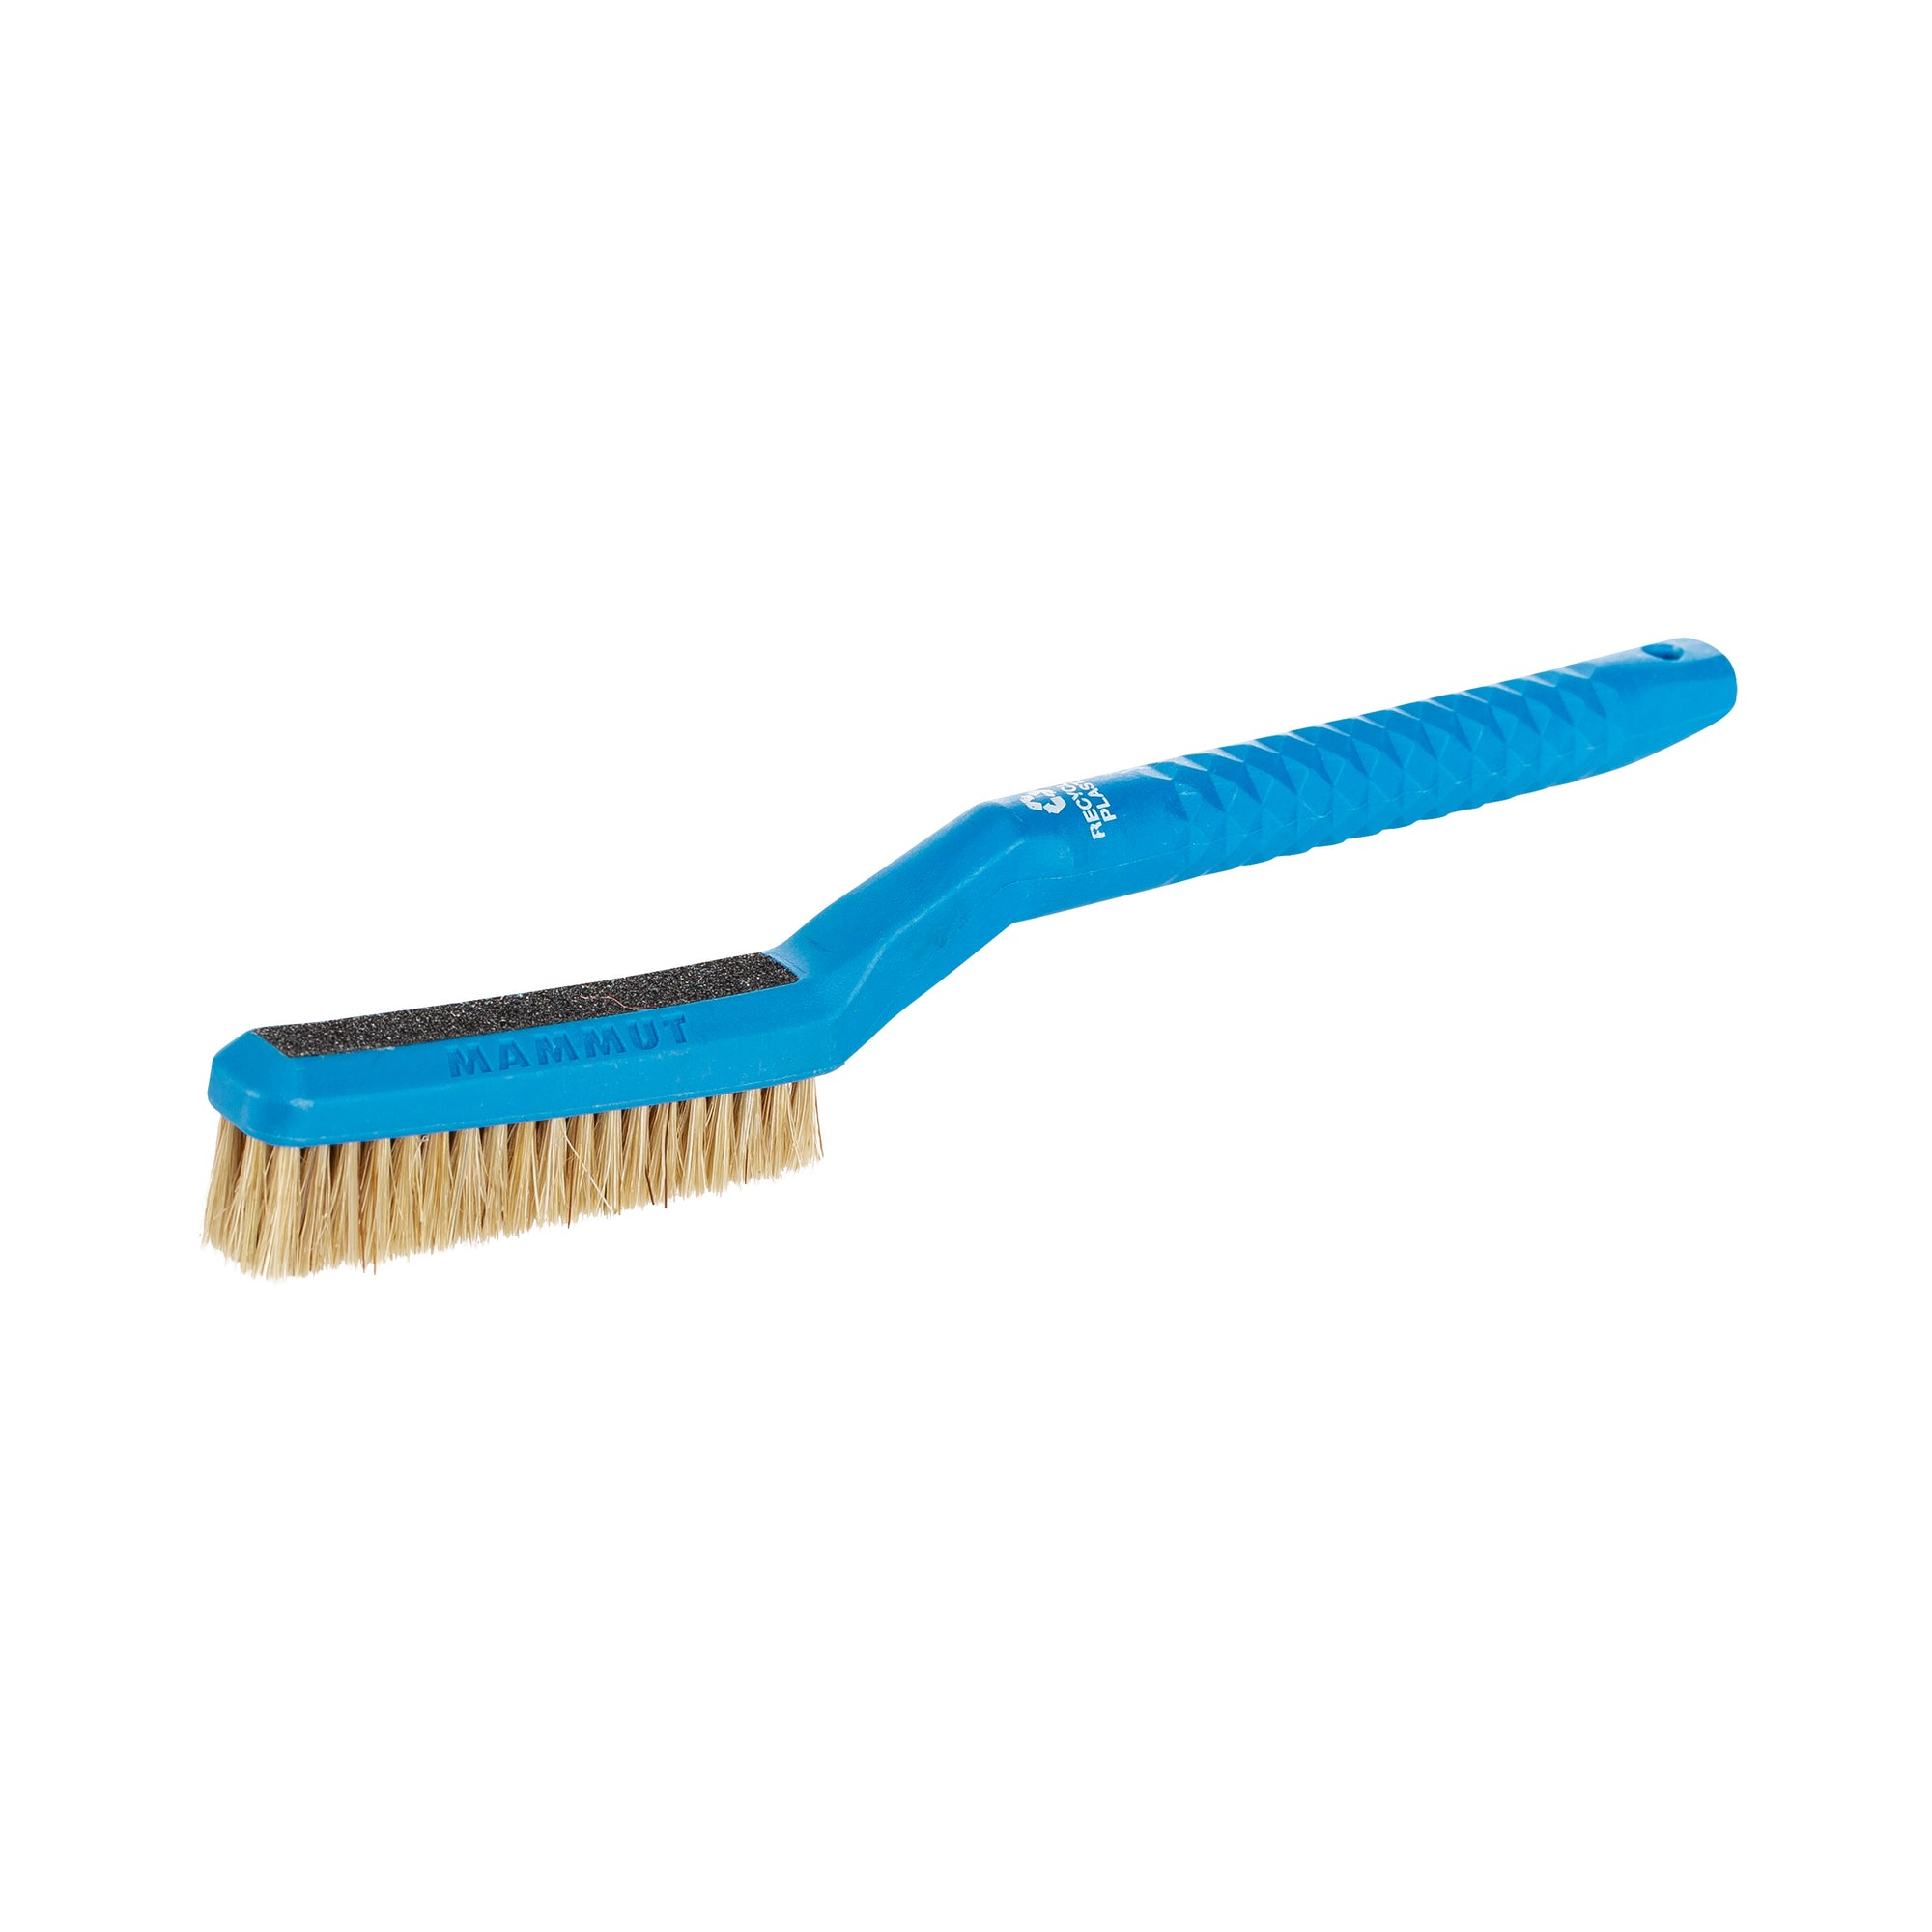 Mammut Sender Brush in blue